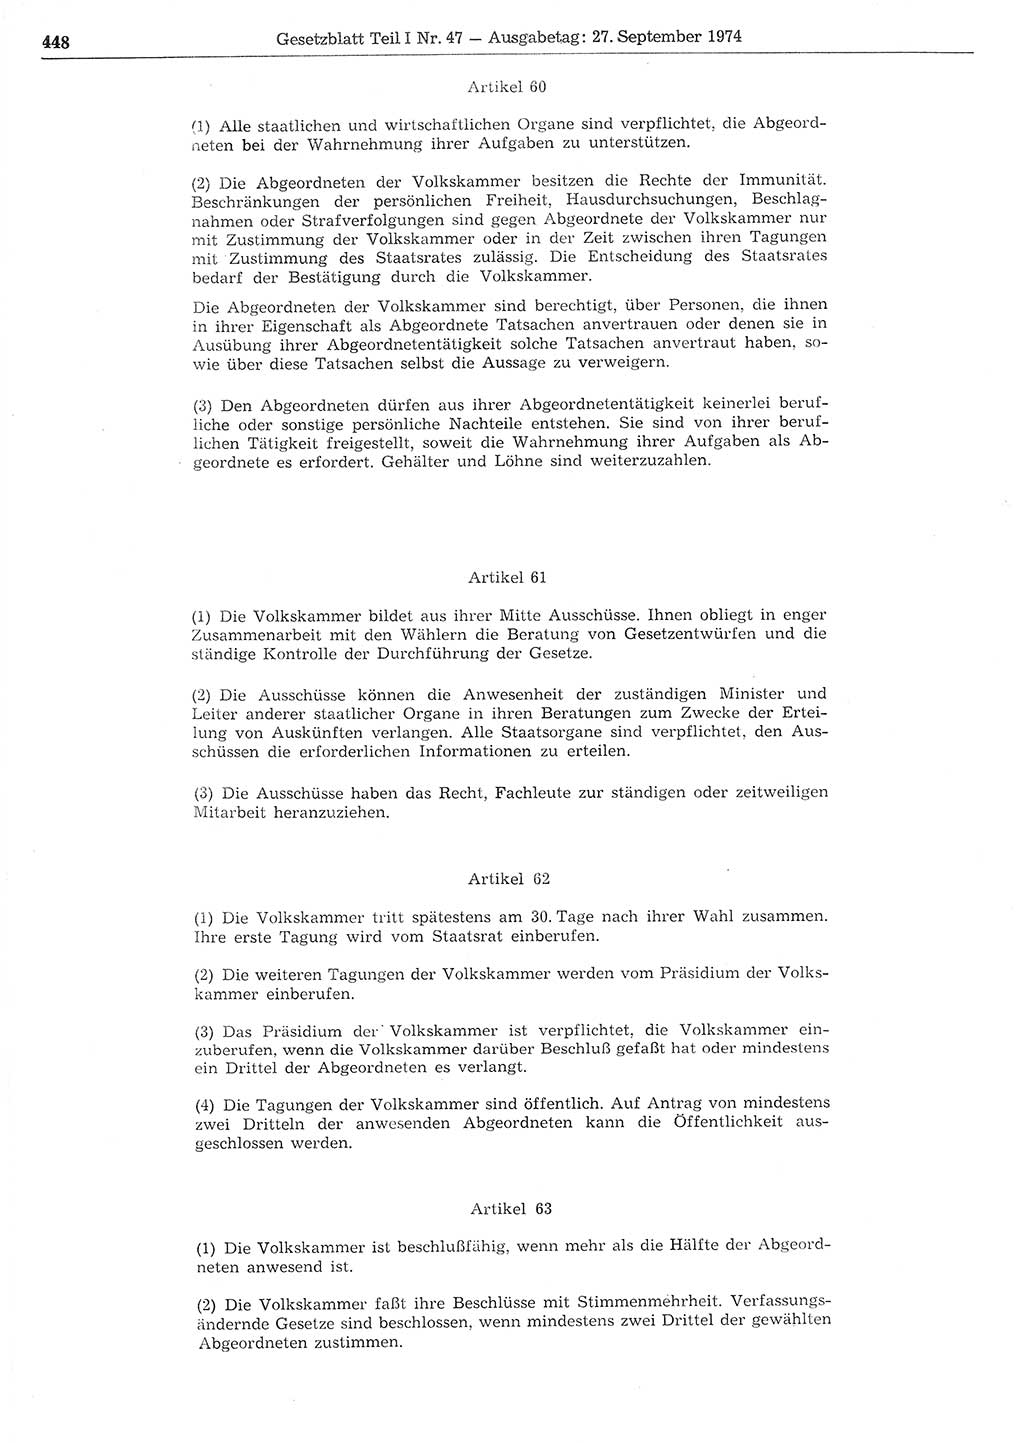 Gesetzblatt (GBl.) der Deutschen Demokratischen Republik (DDR) Teil Ⅰ 1974, Seite 448 (GBl. DDR Ⅰ 1974, S. 448)